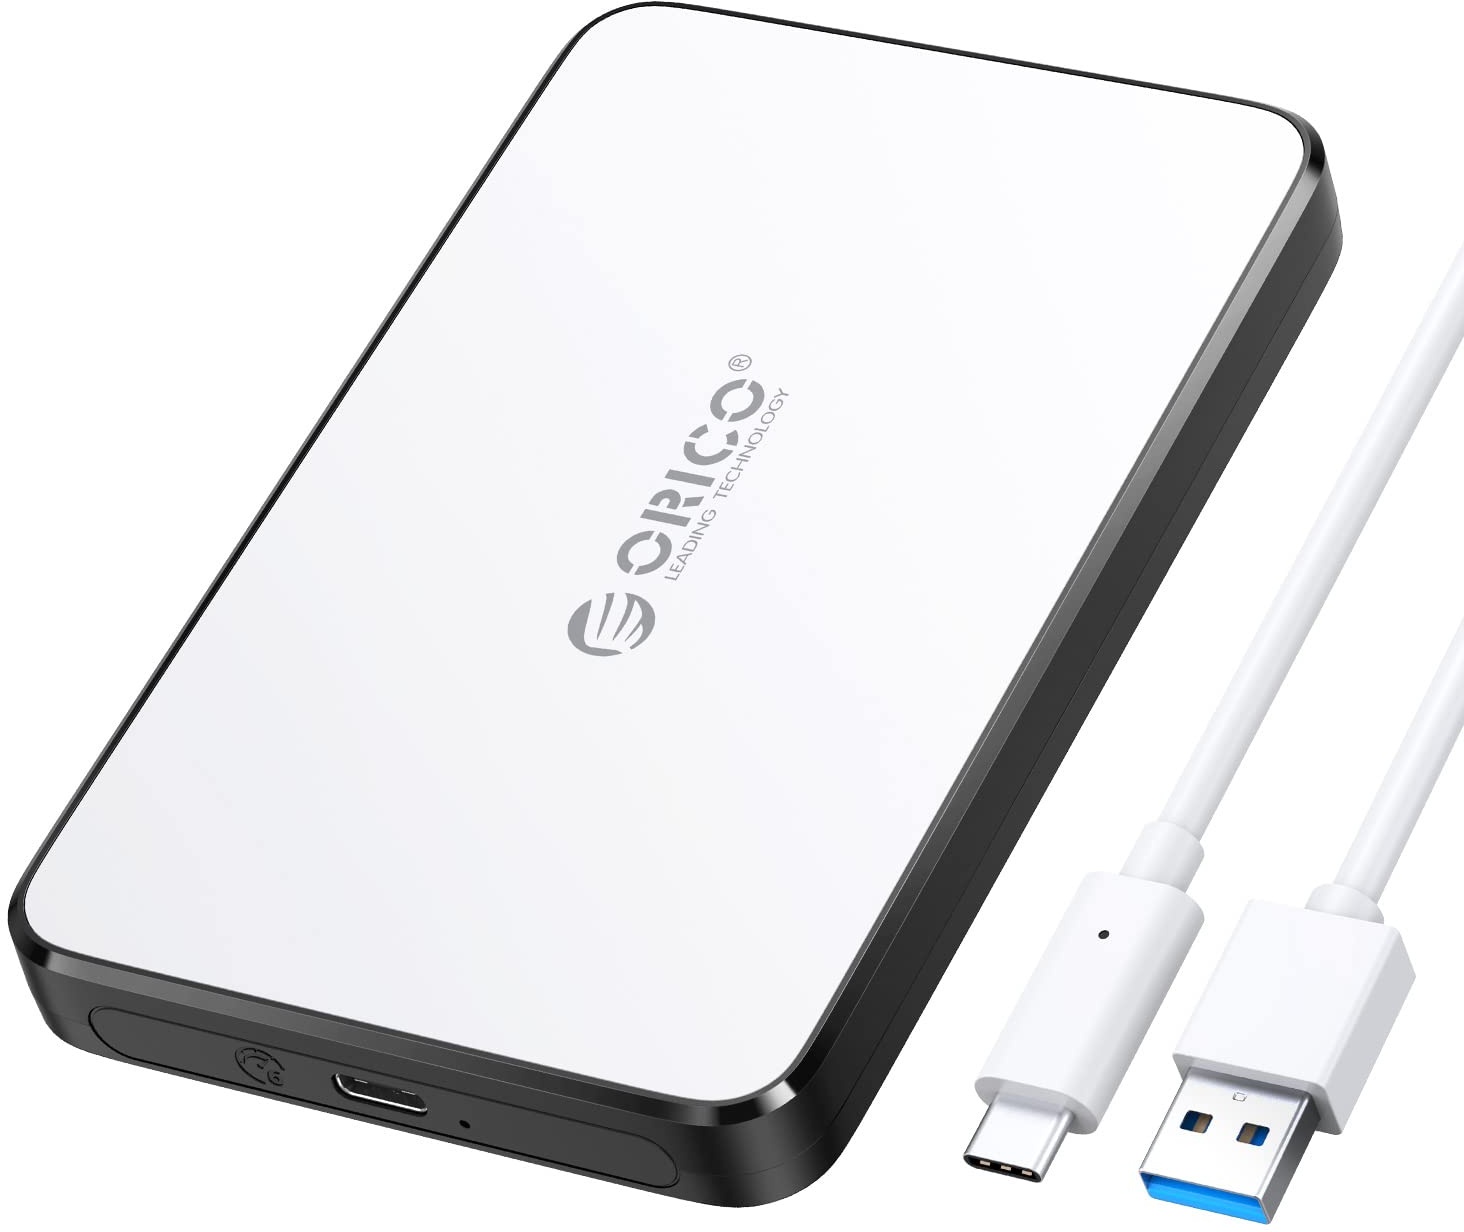 ORICO Festplattengehäuse 2 5 Zoll USB C, USB 3.1 Gen 2 Externe Festplattengehäuse für 7/9,5 mm SATA I II III HDD/SSD mit UASP, USB Kabel, SSD Gehäuse Unterstützt 6 TB, Werkzeugfreie(Weiß, 2588C3)